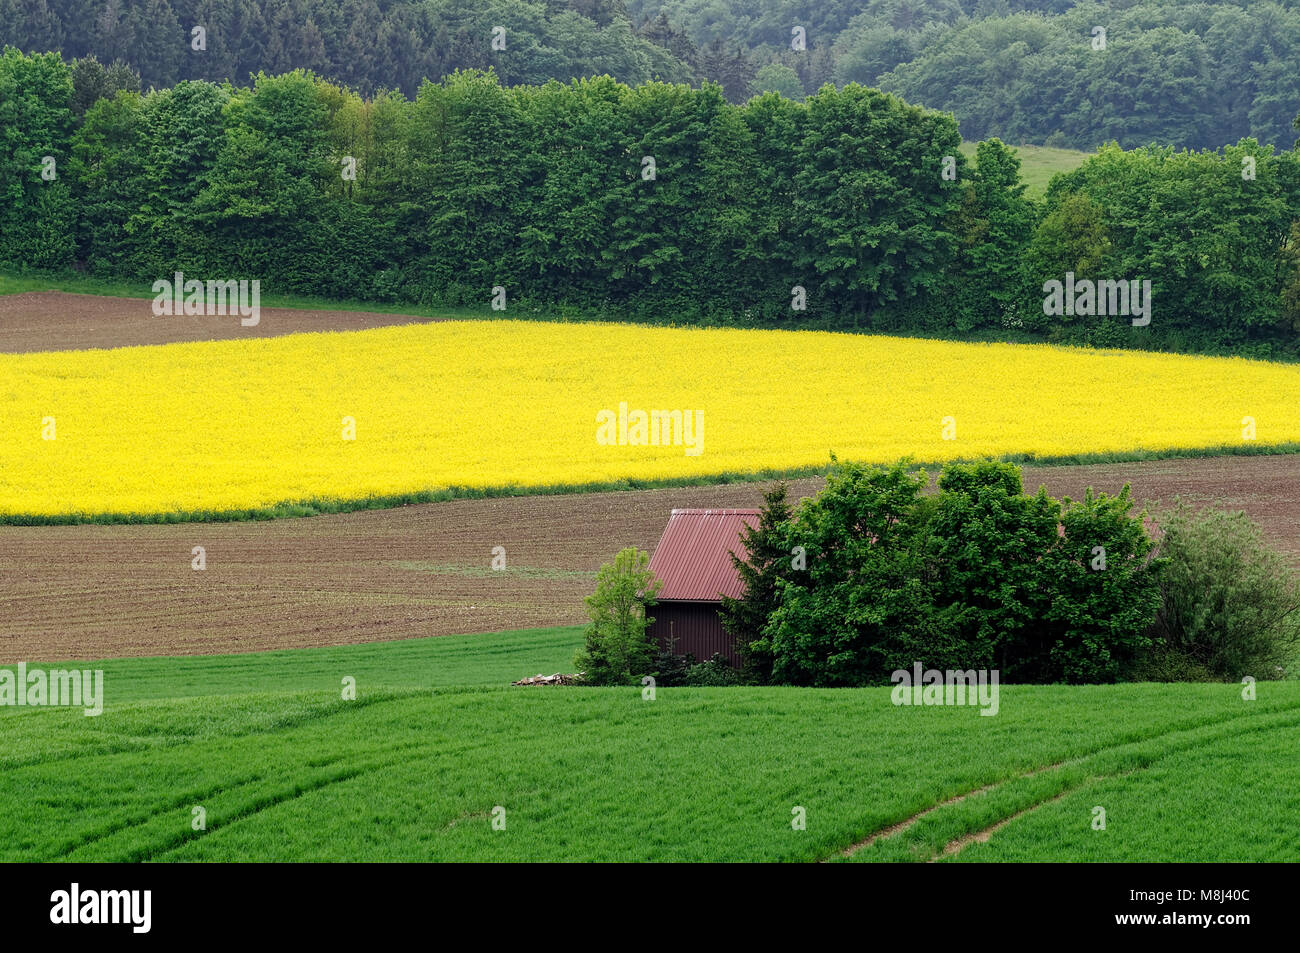 Field scenery with canola field and barn on the Swabian Albs near Feldstetten (part of laichingen), Alb-Donau District, Baden-Württemberg, Germany Stock Photo